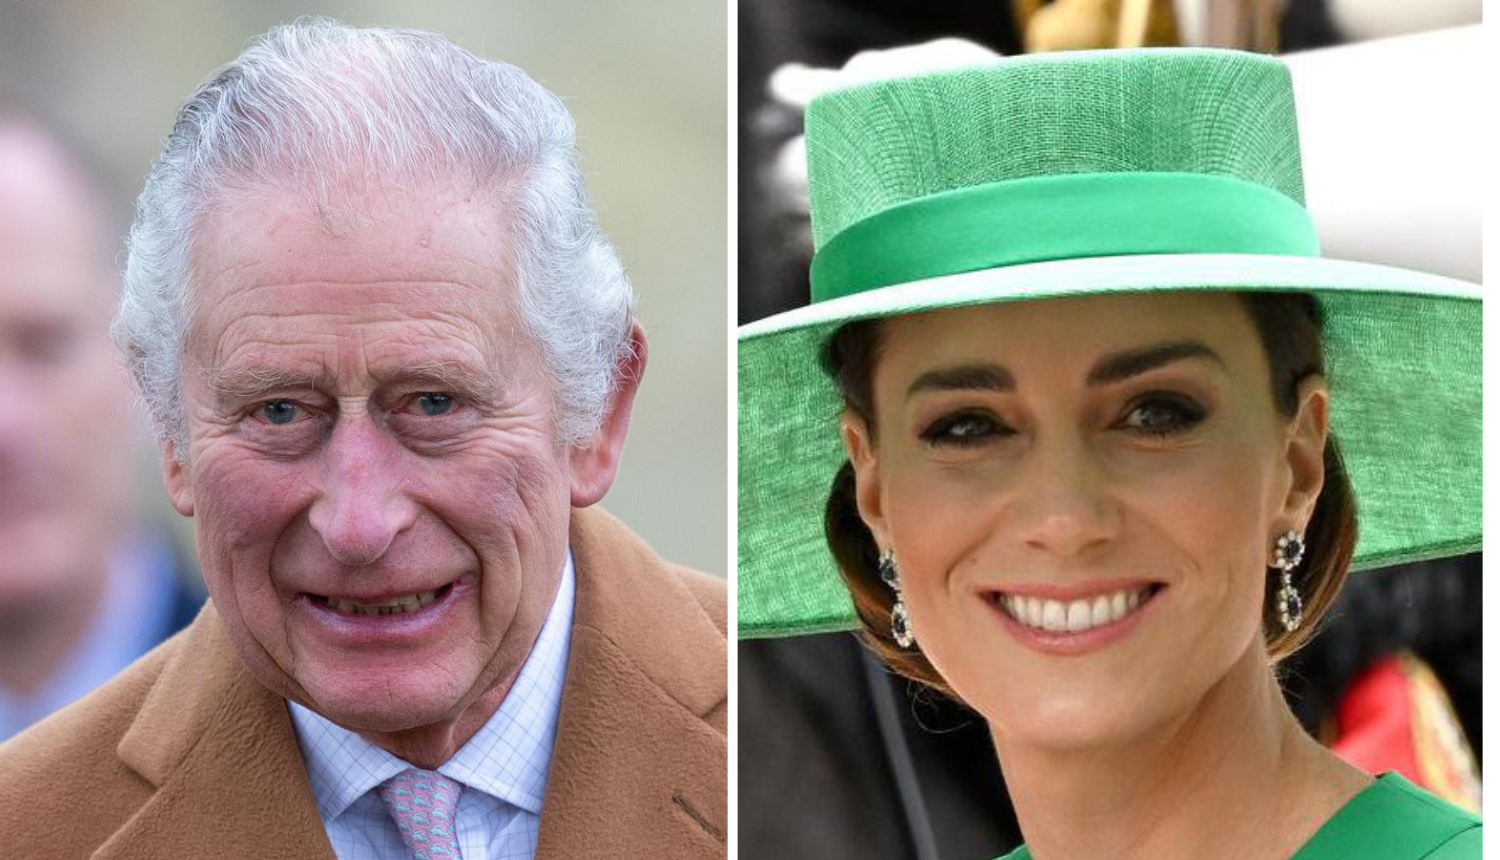 Charles je ponosan na princezu Kate zbog njezine hrabrosti